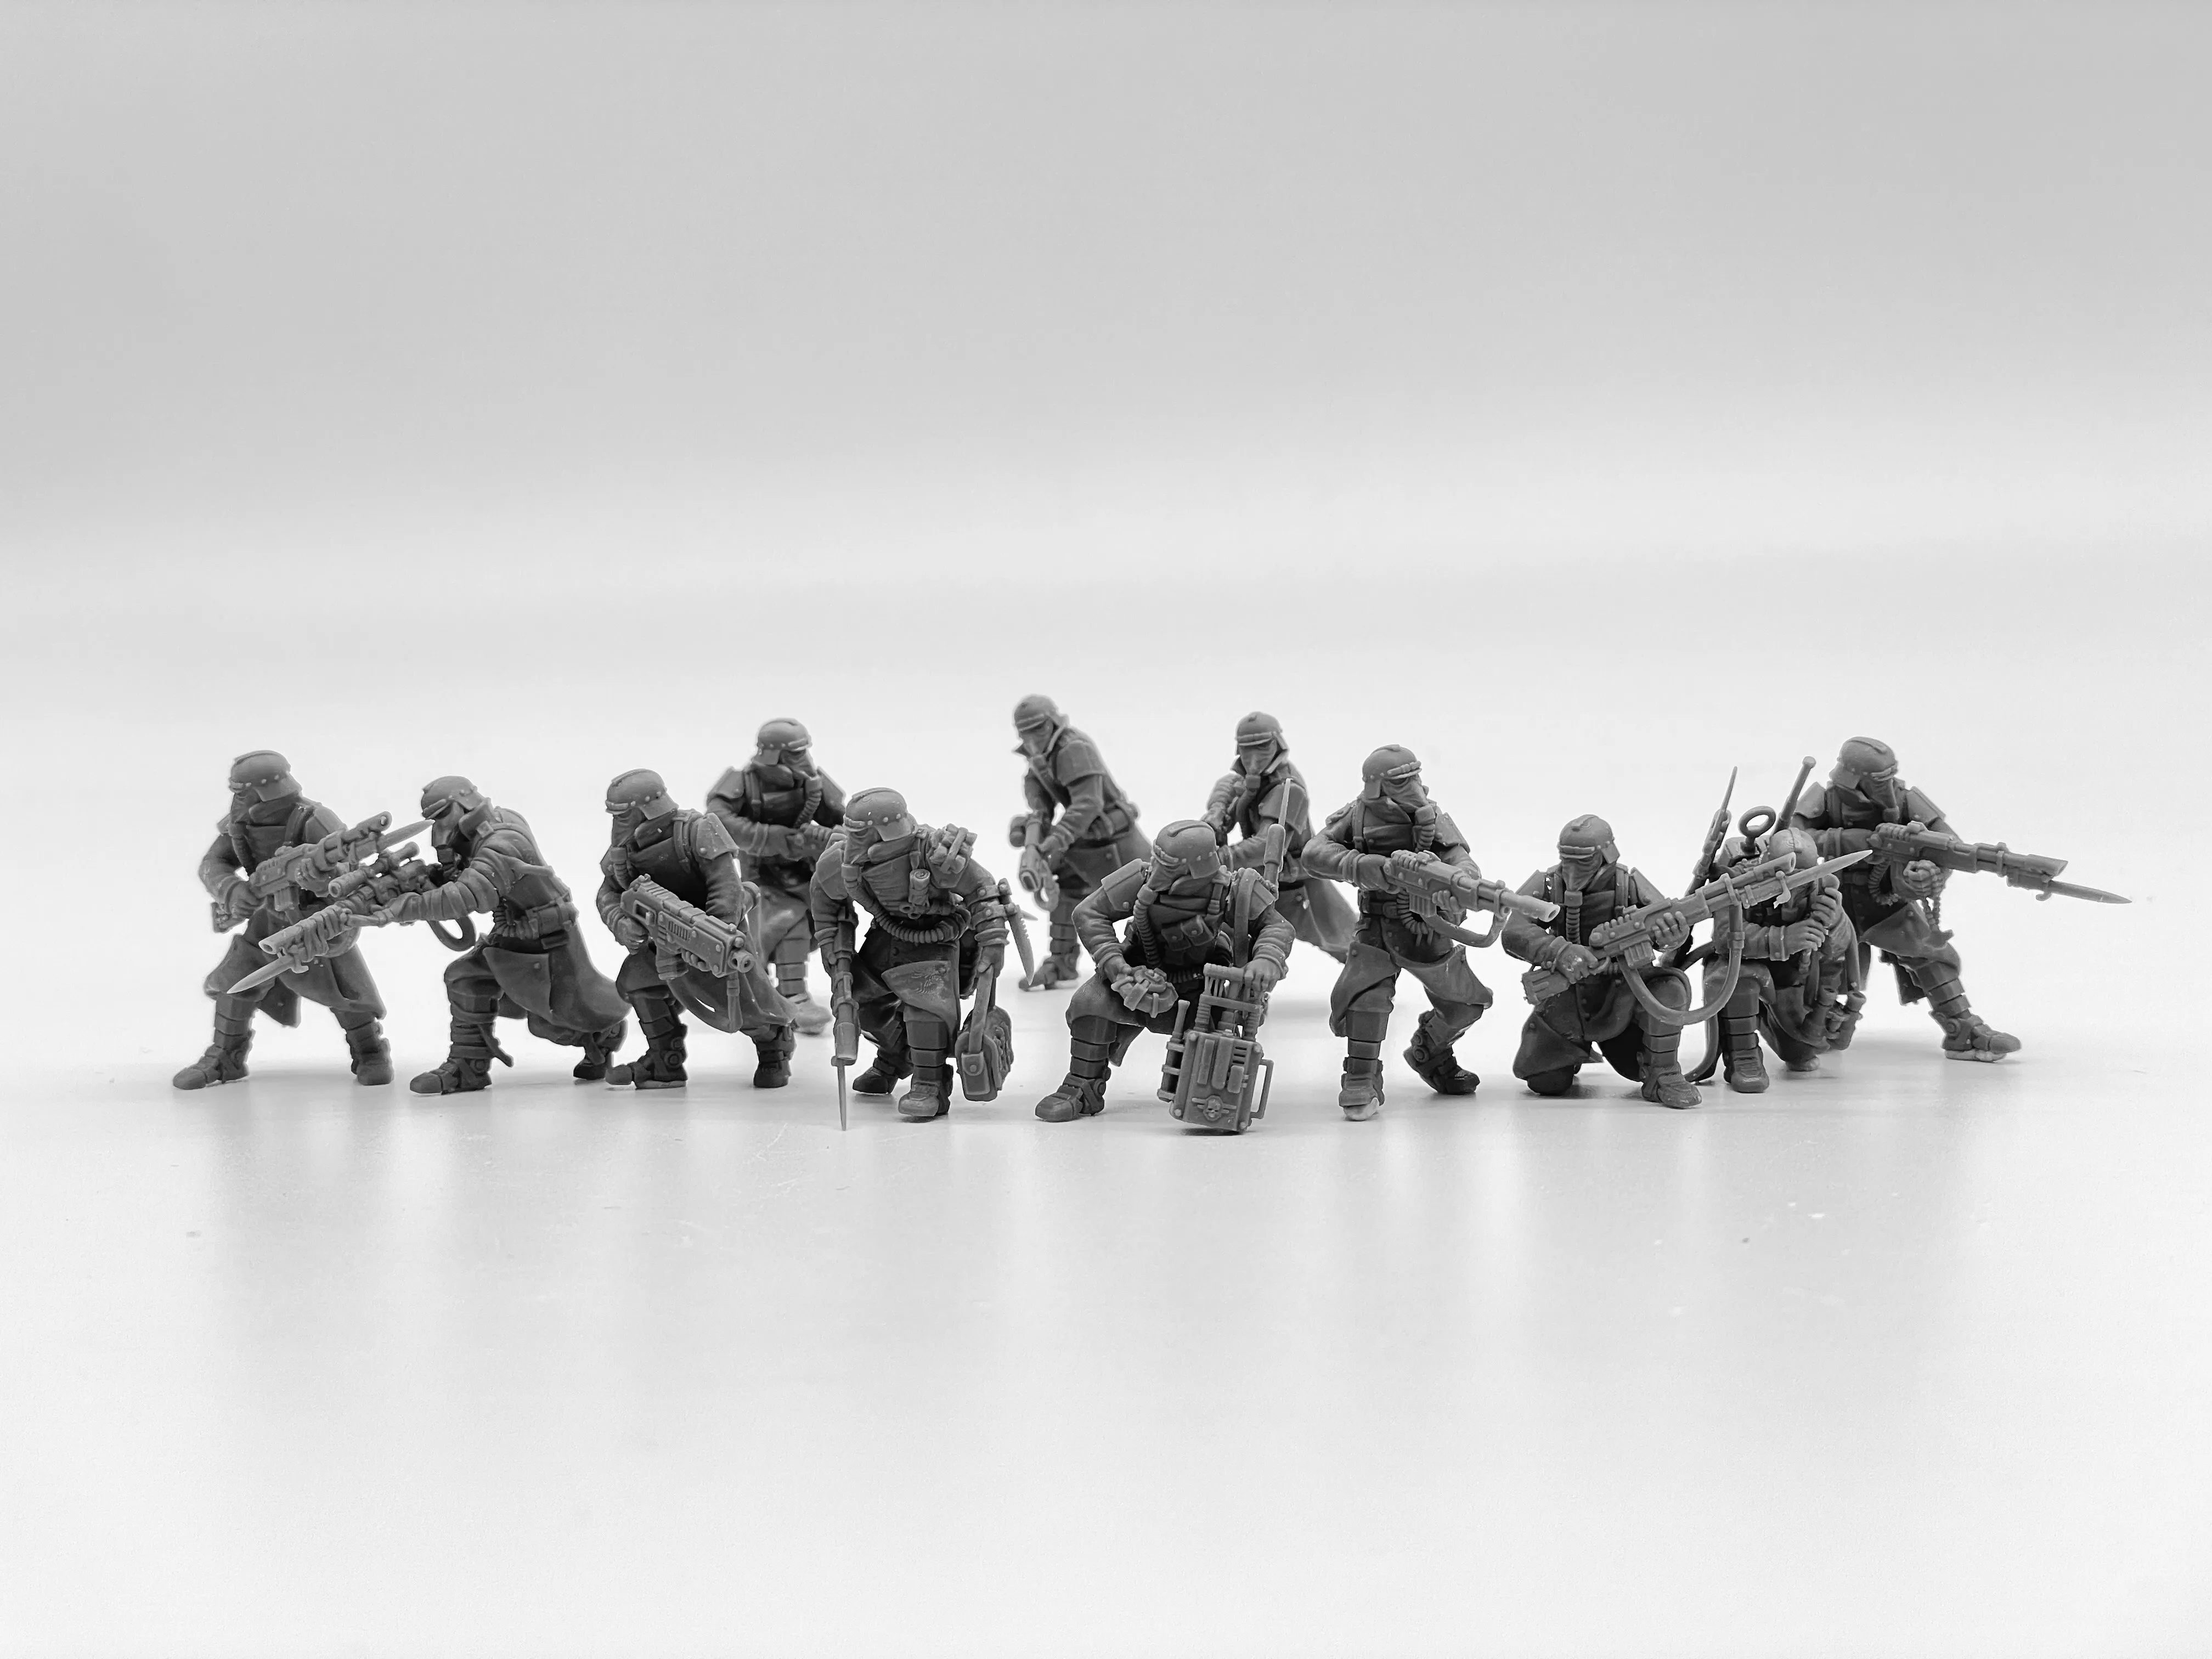 제국 포스 데스 디비전 킬 수지 모델 키트 미니어처 전쟁 게임되지 않은 군인 그림 28mm 규모의 탁상용 게임